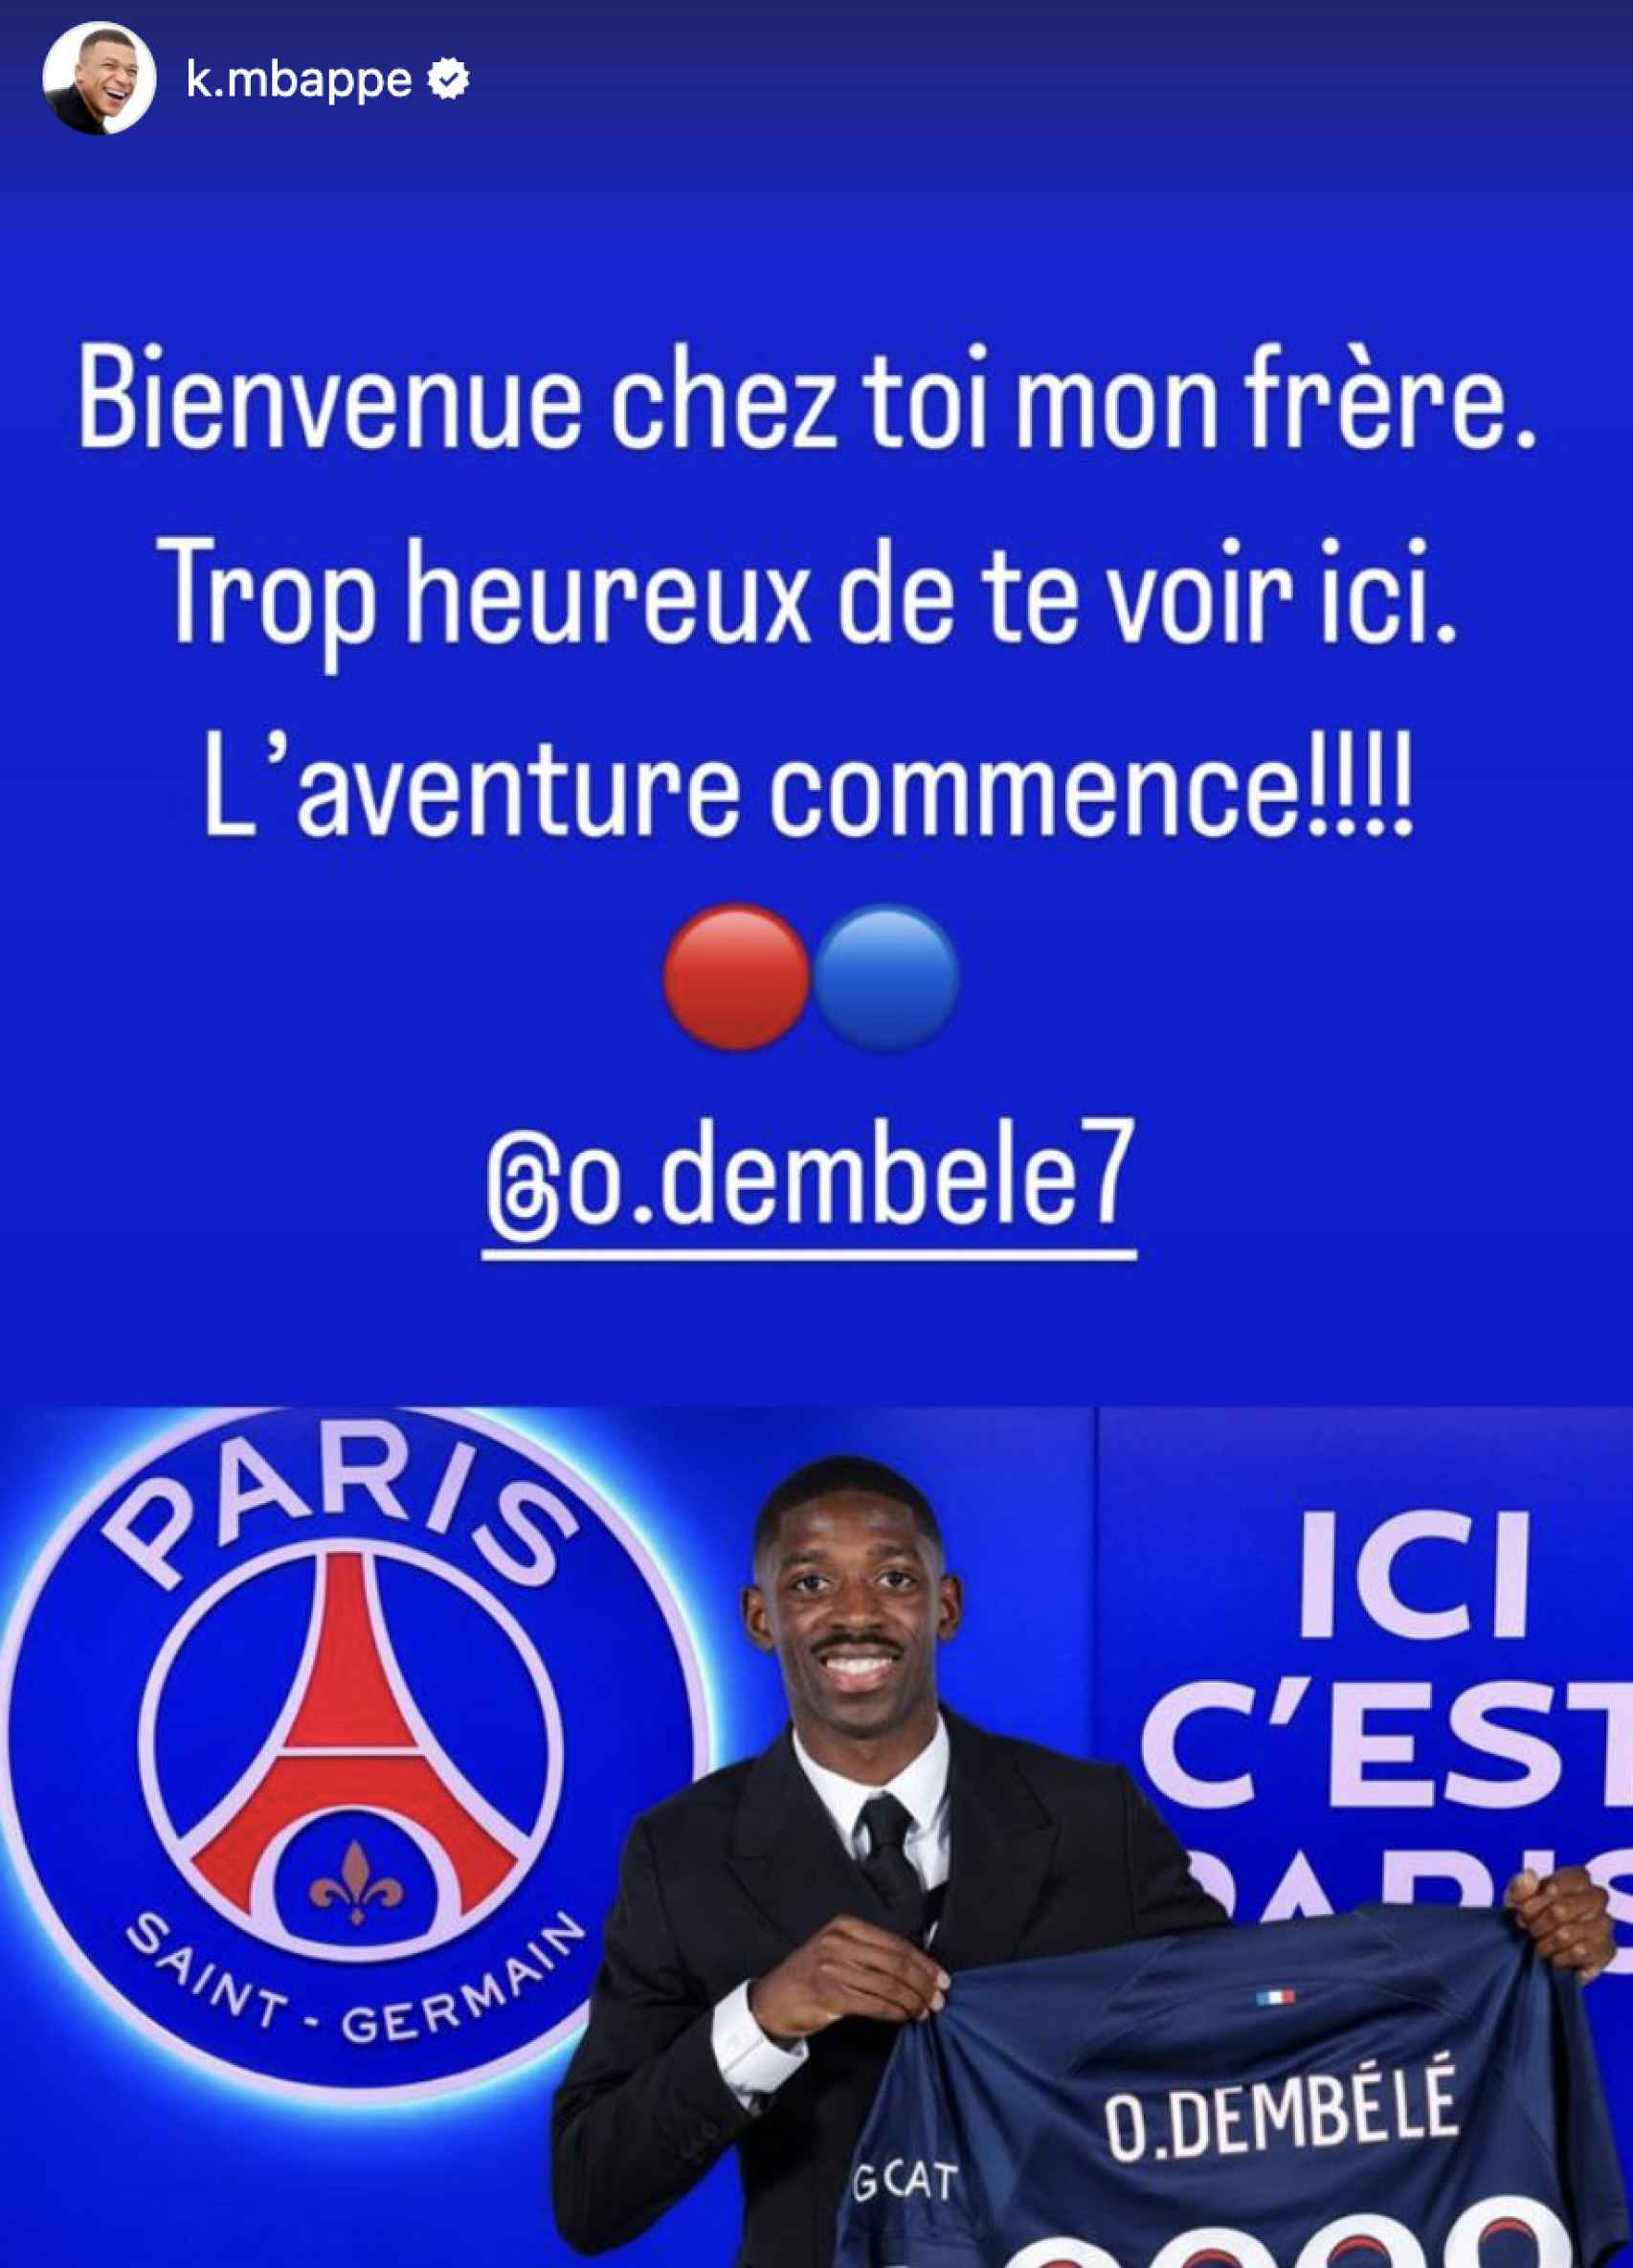 La forma en la que Mbappé le dio la bienvenida a Dembélé.